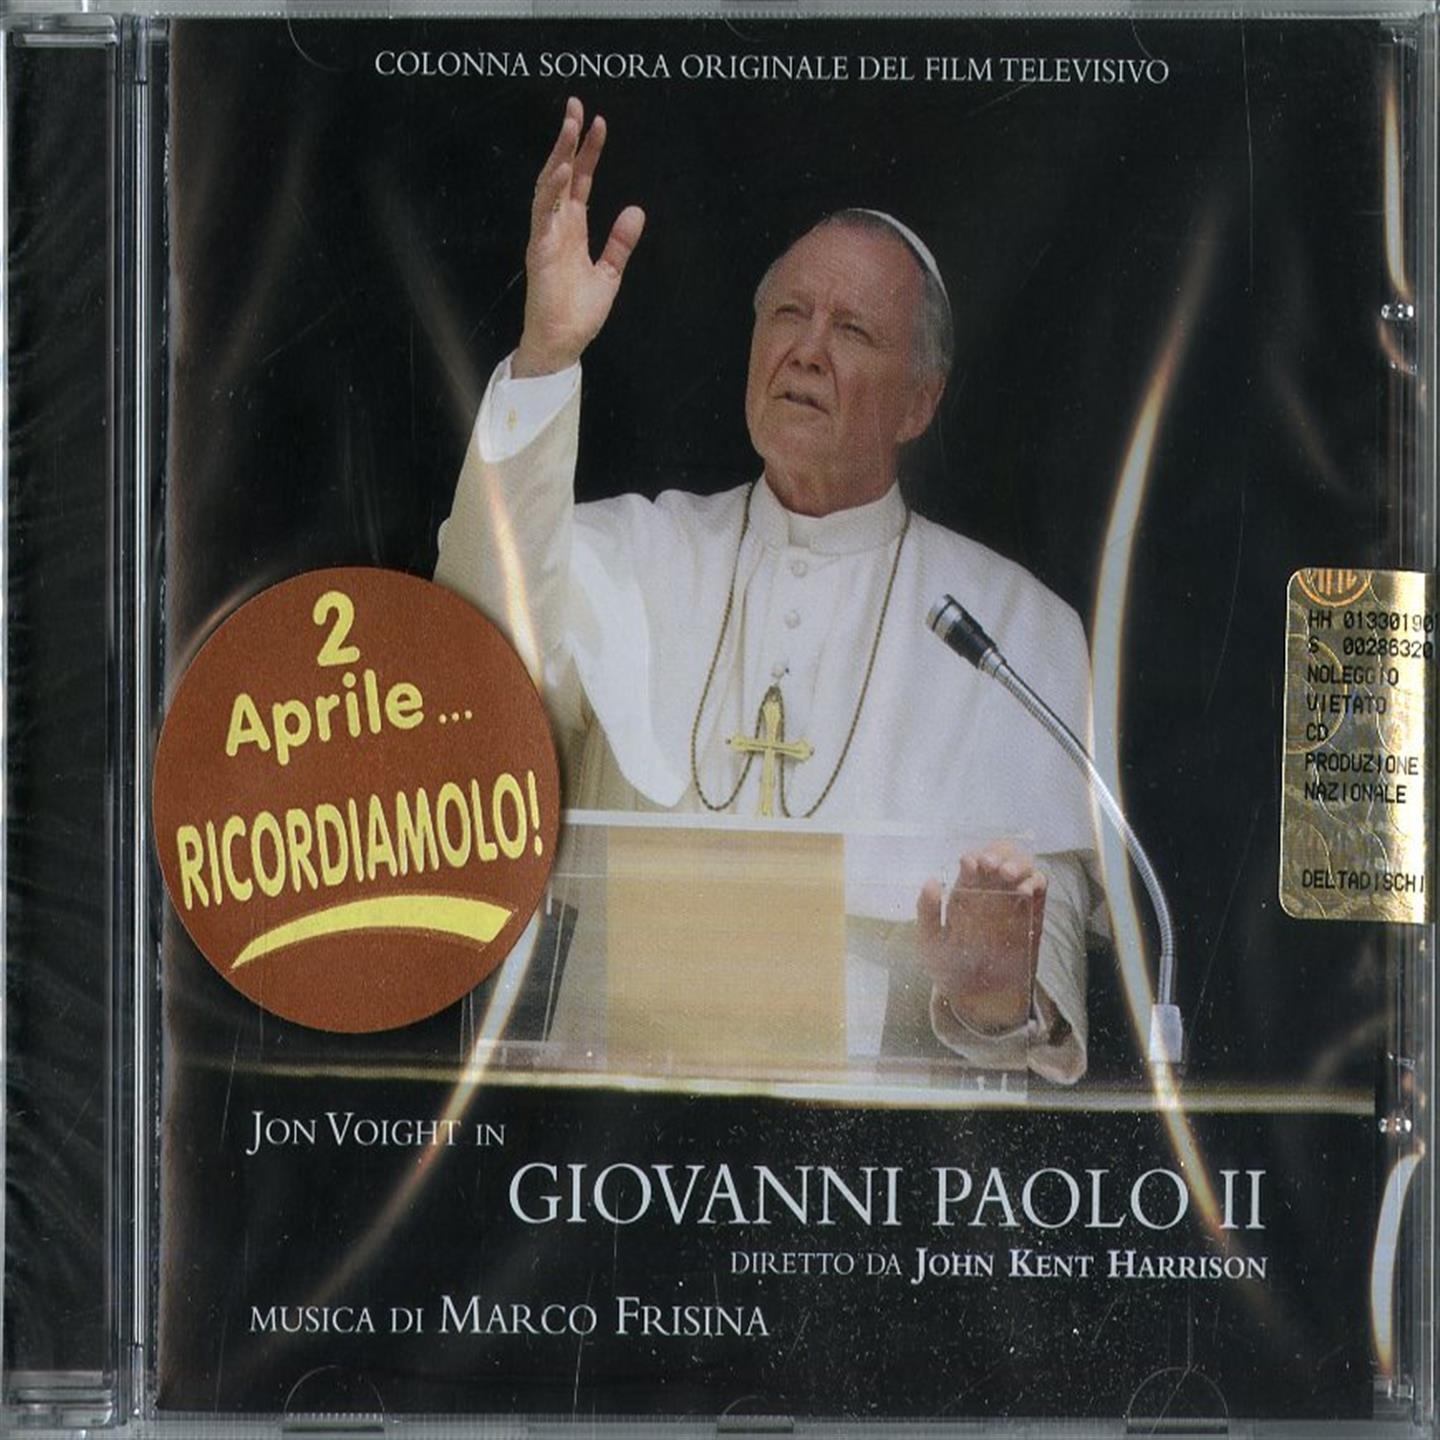 Audio Cd Marco Frisina - Giovanni Paolo II NUOVO SIGILLATO, EDIZIONE DEL 02/02/2010 DISPO ENTRO UN MESE, SU ORDINAZIONE